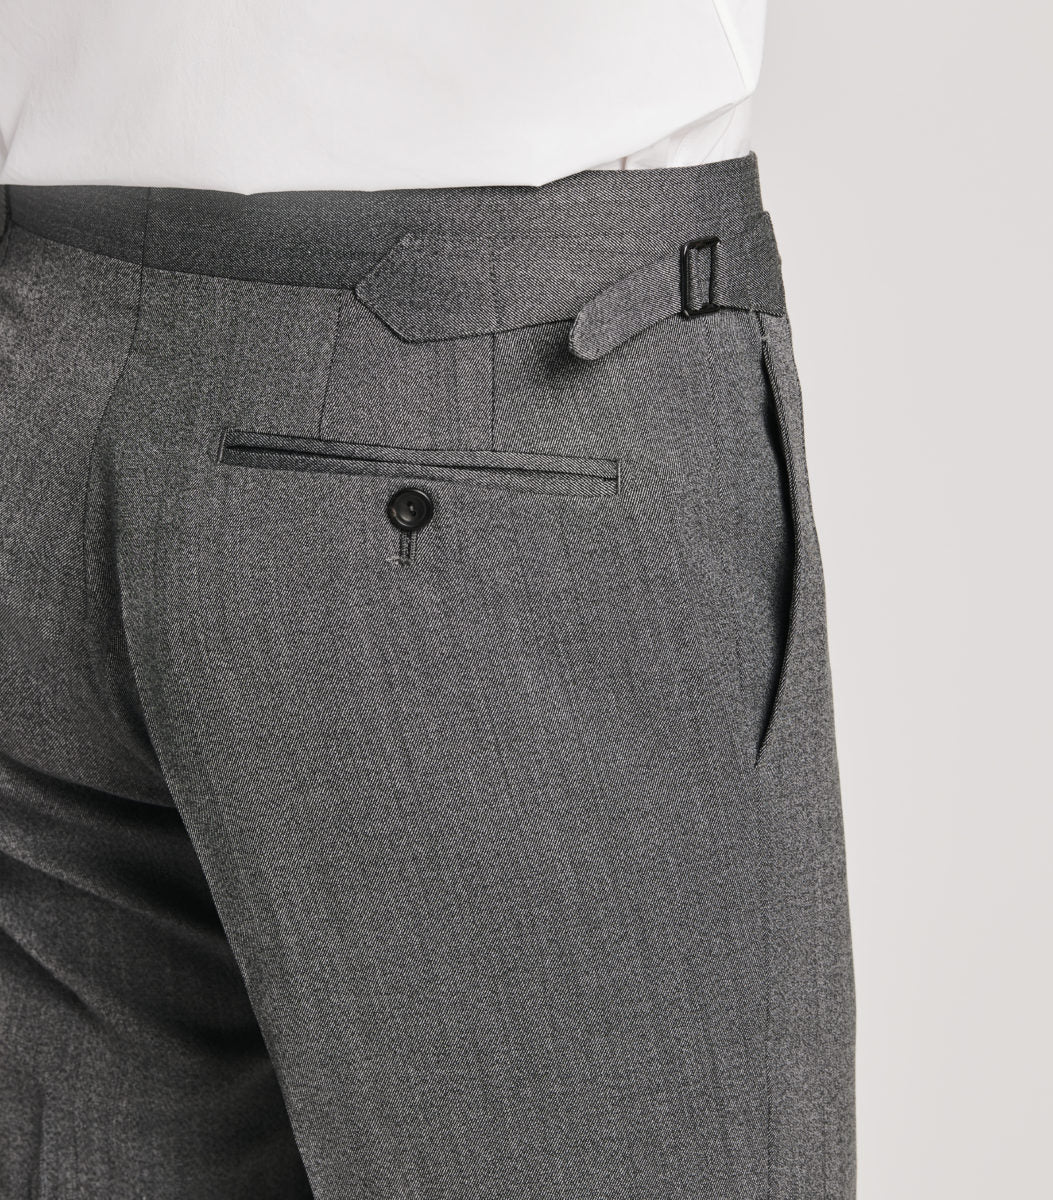 Cavalry Twill Trousers — De Oost Bespoke Tailoring